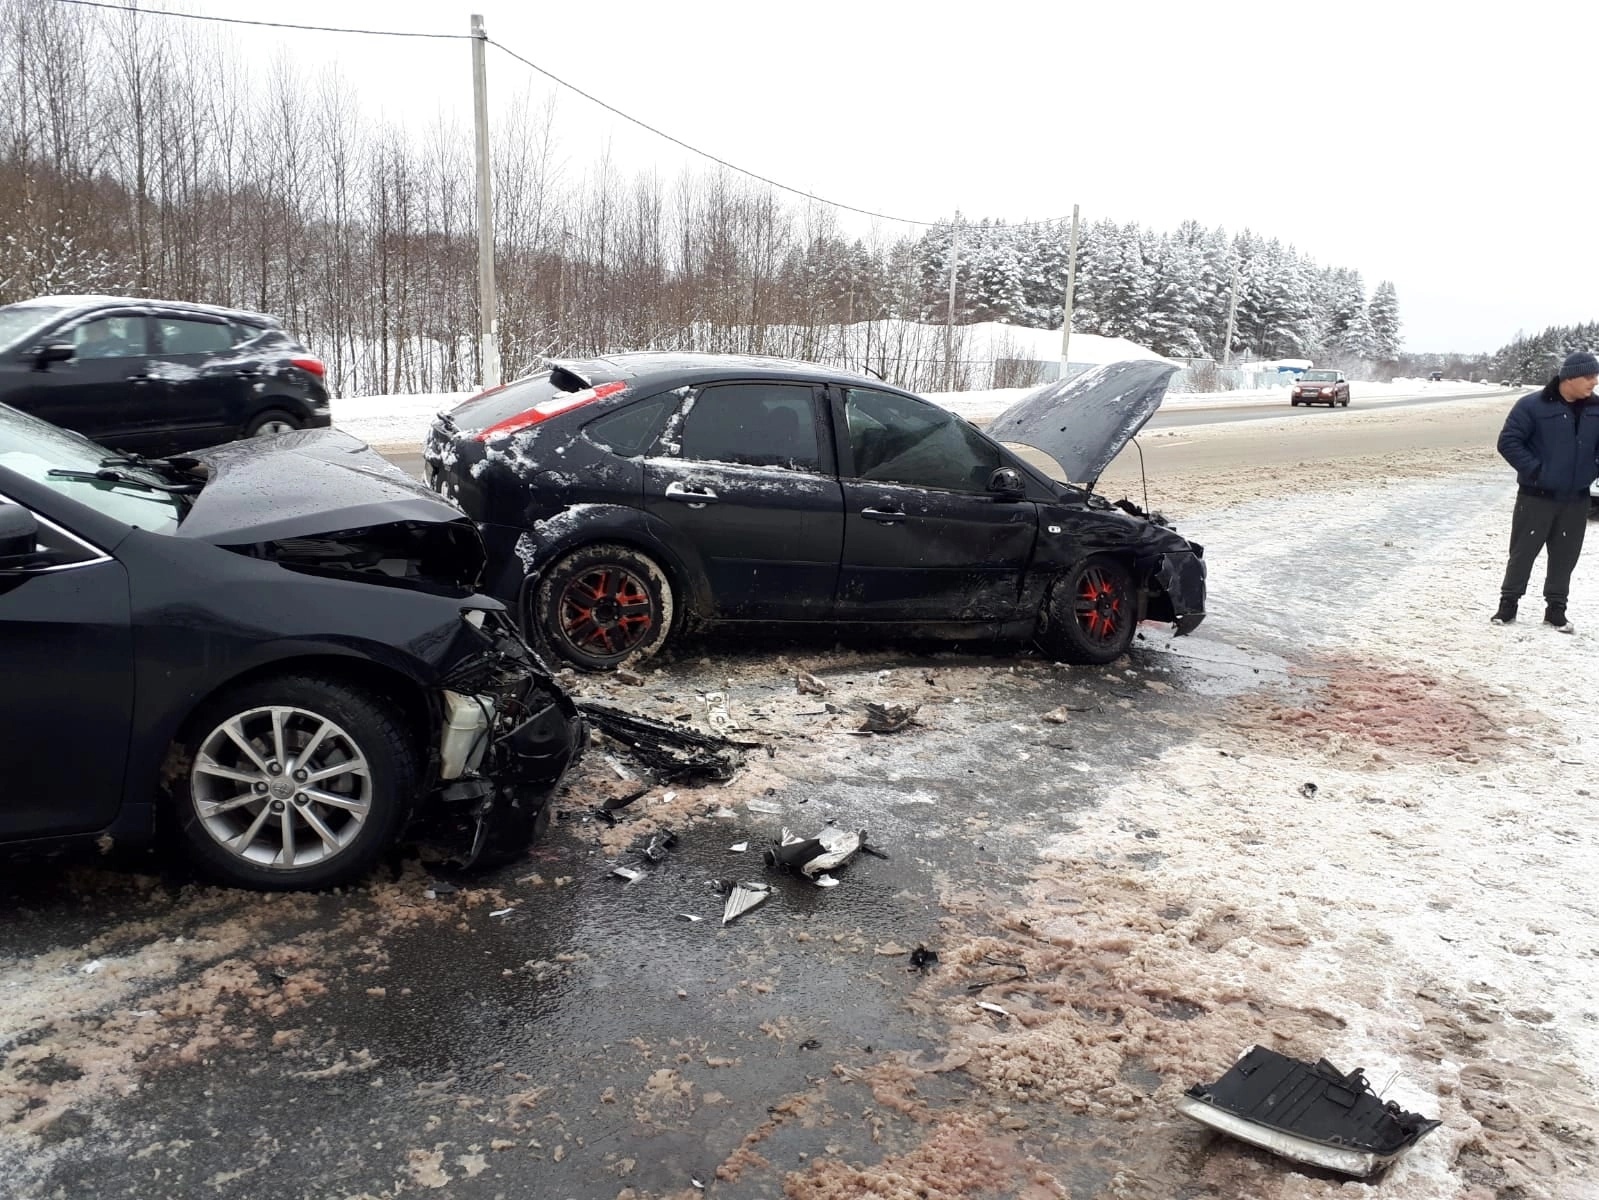  Части авто разметало по трассе: в Ярославле ищут свидетелей ДТП